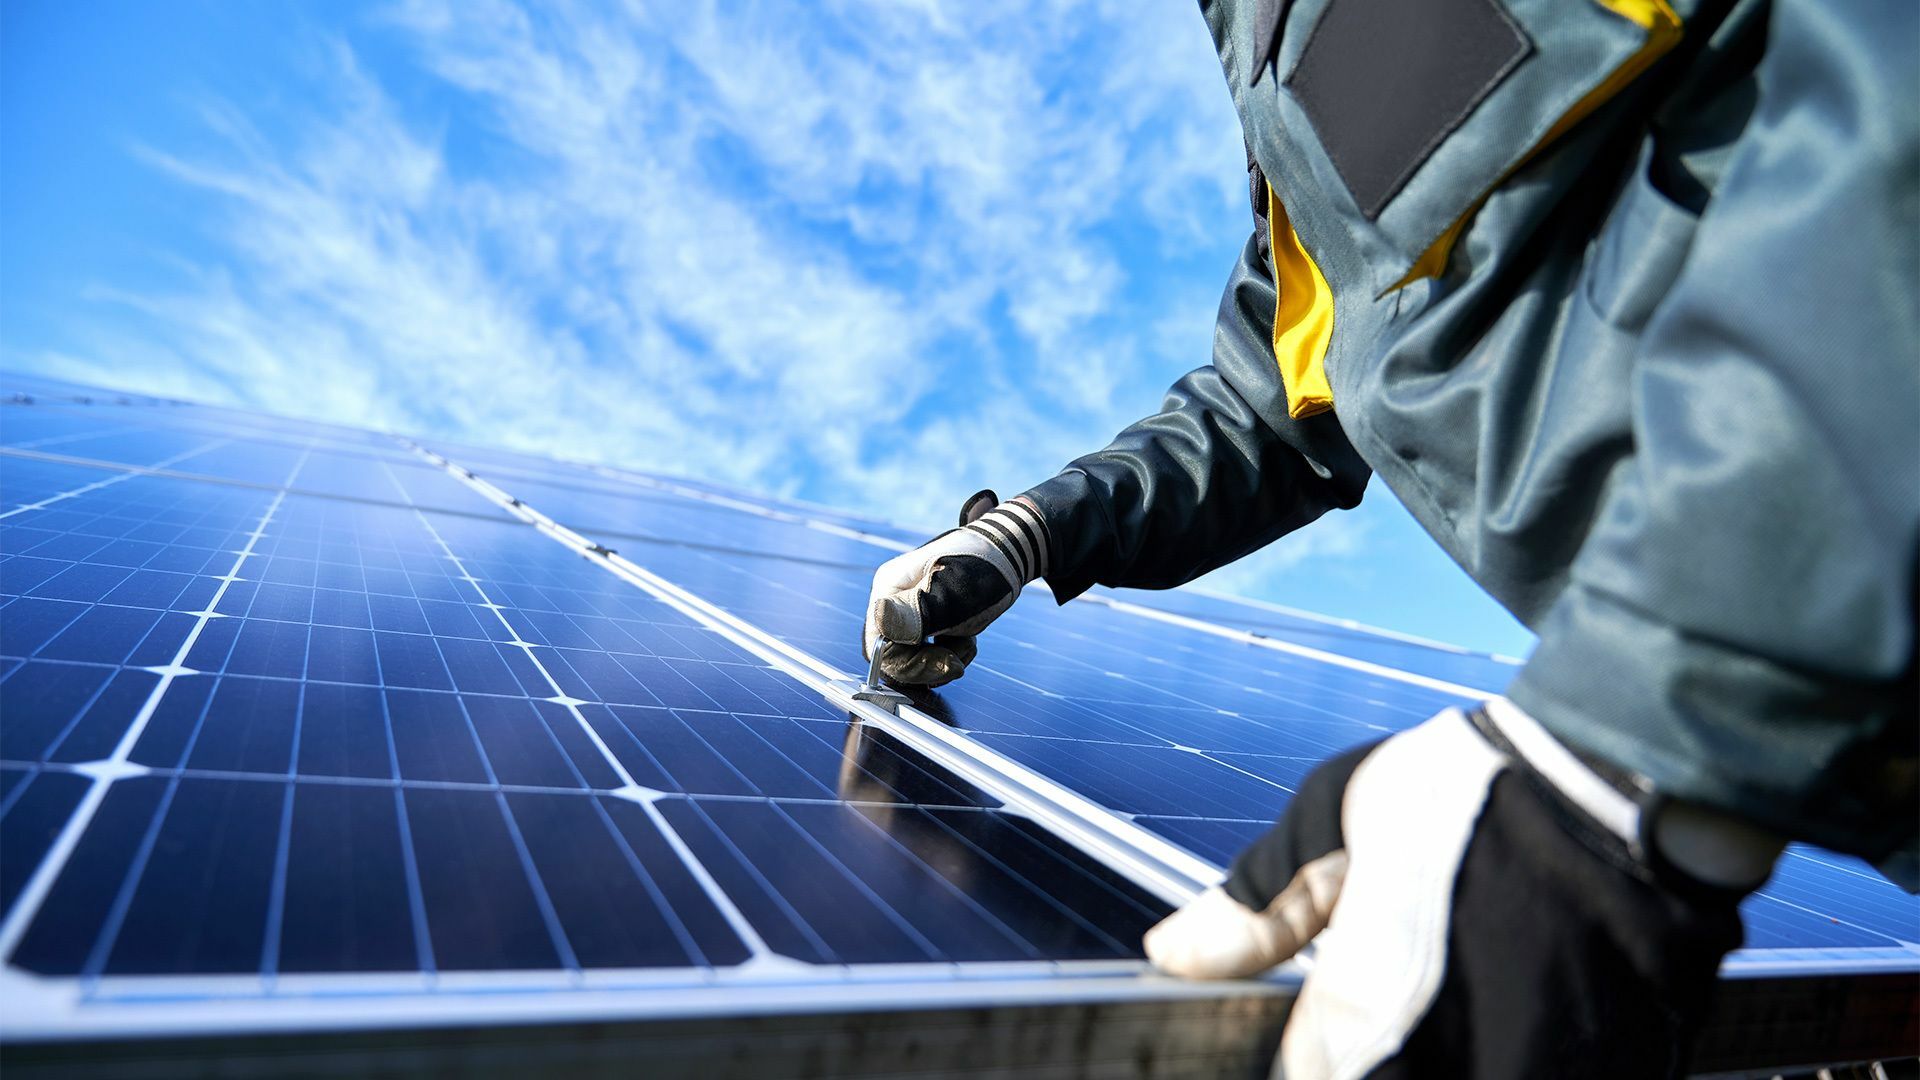 Nahaufnahme von Händen eines Technikers in Arbeitshandschuhen, der an einer Photovoltaik-Anlage arbeitet